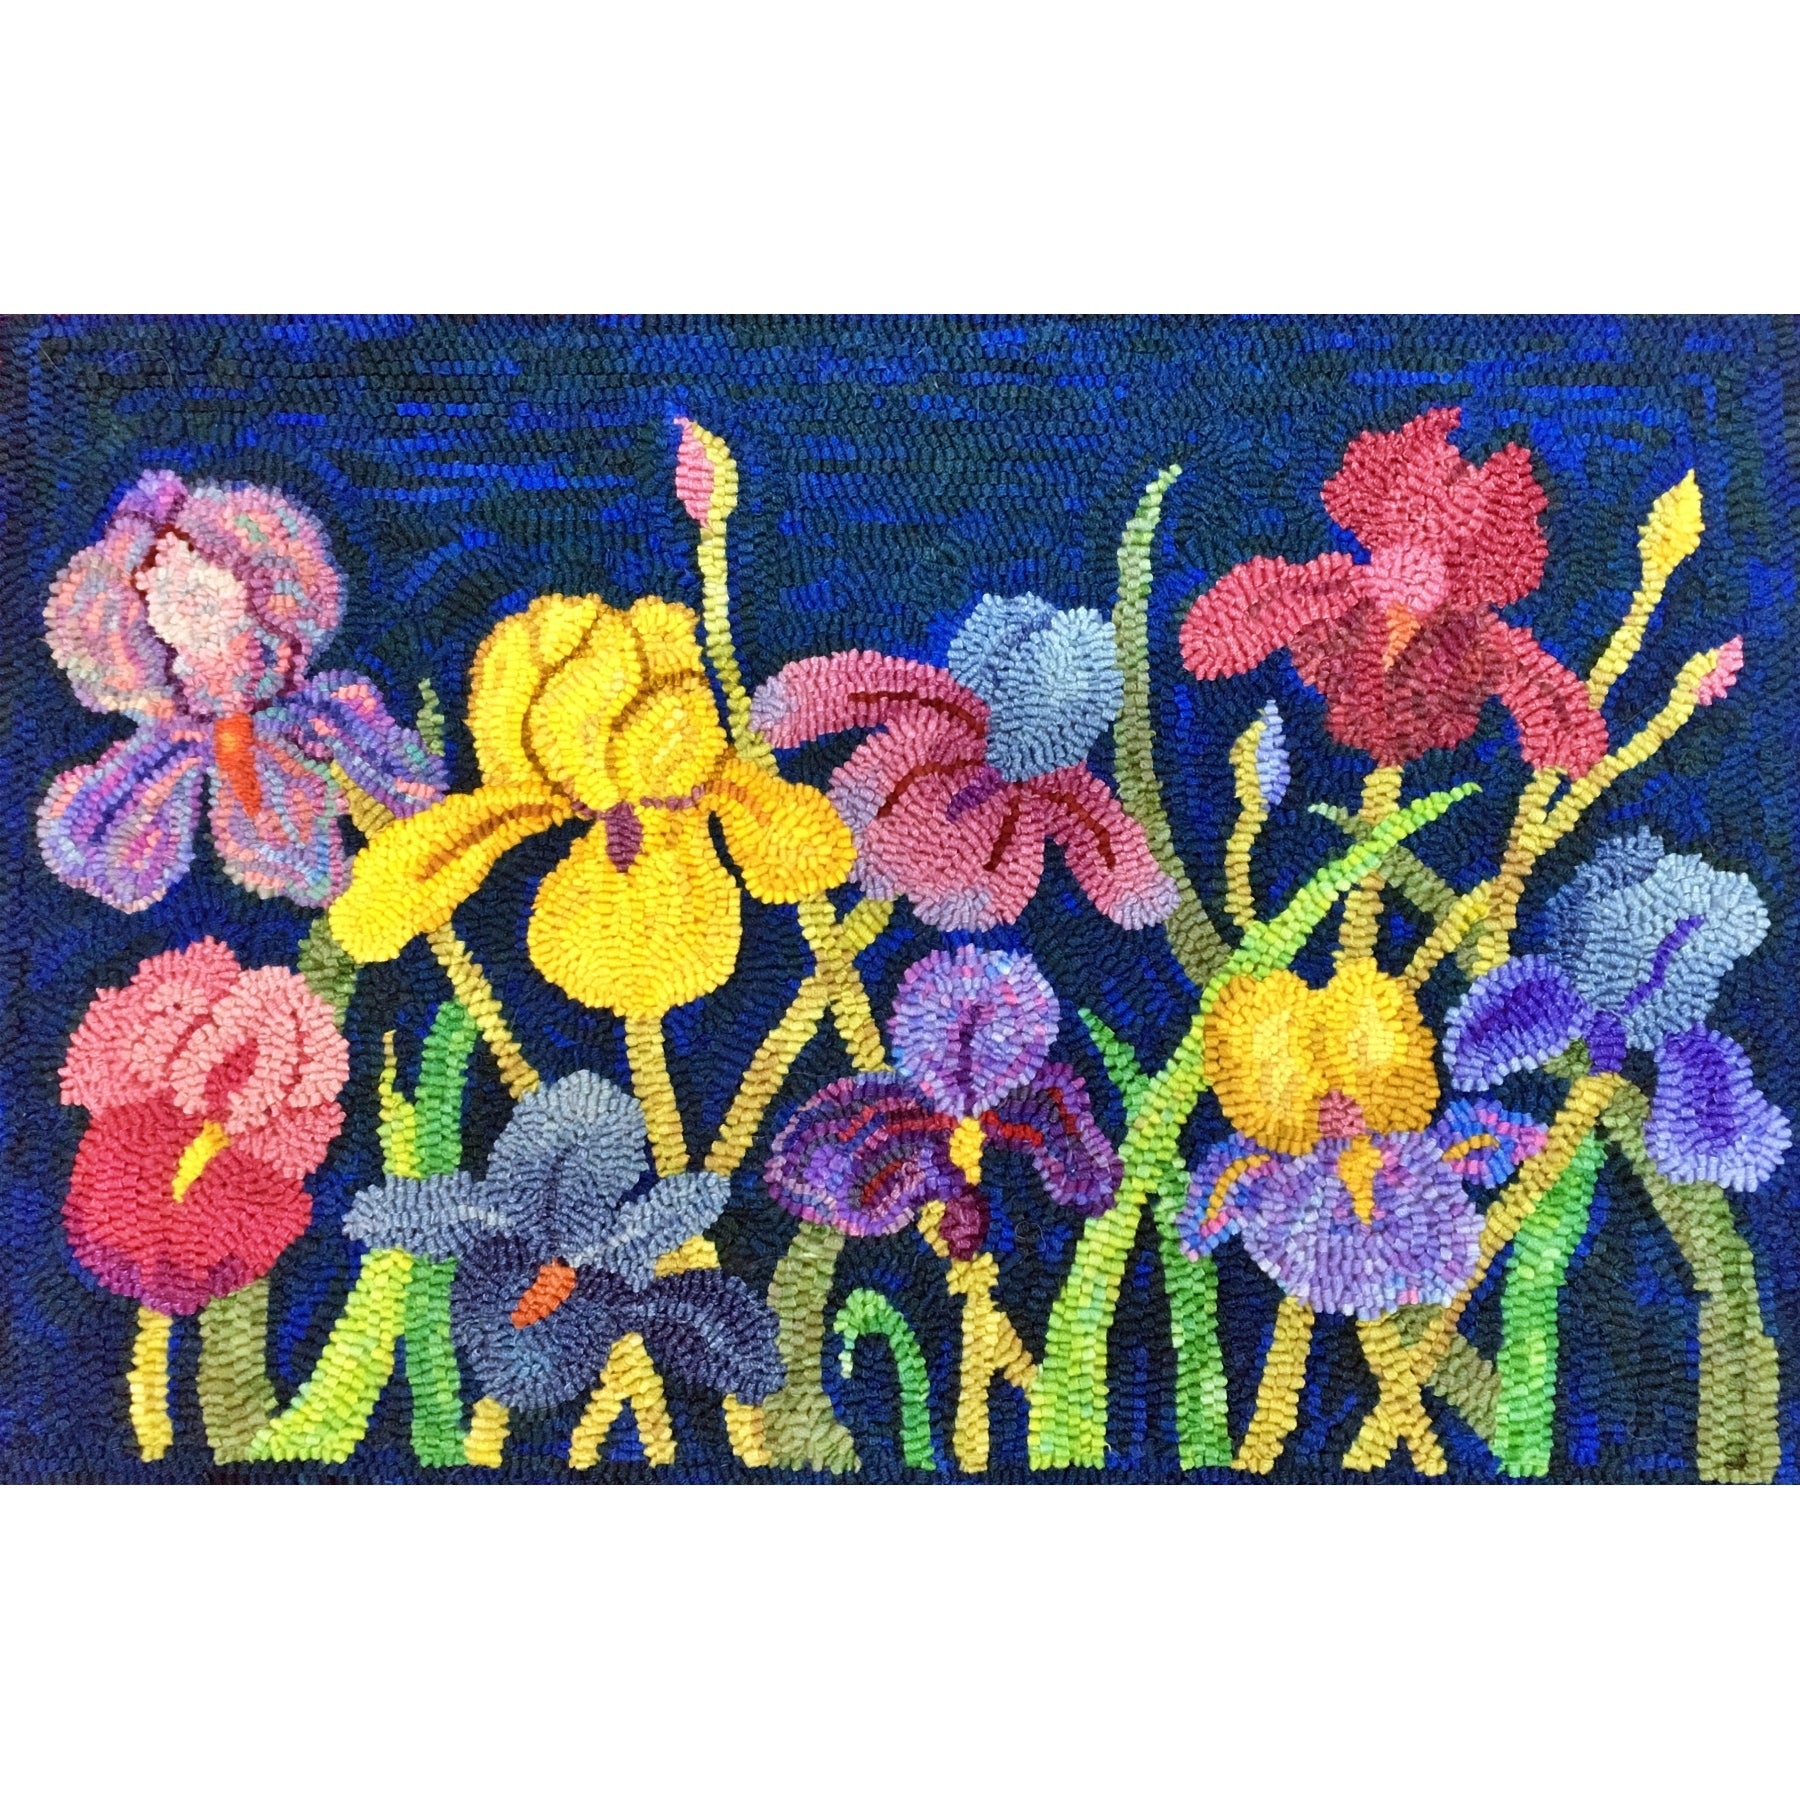 Irises, rug hooked by Karen Maddox